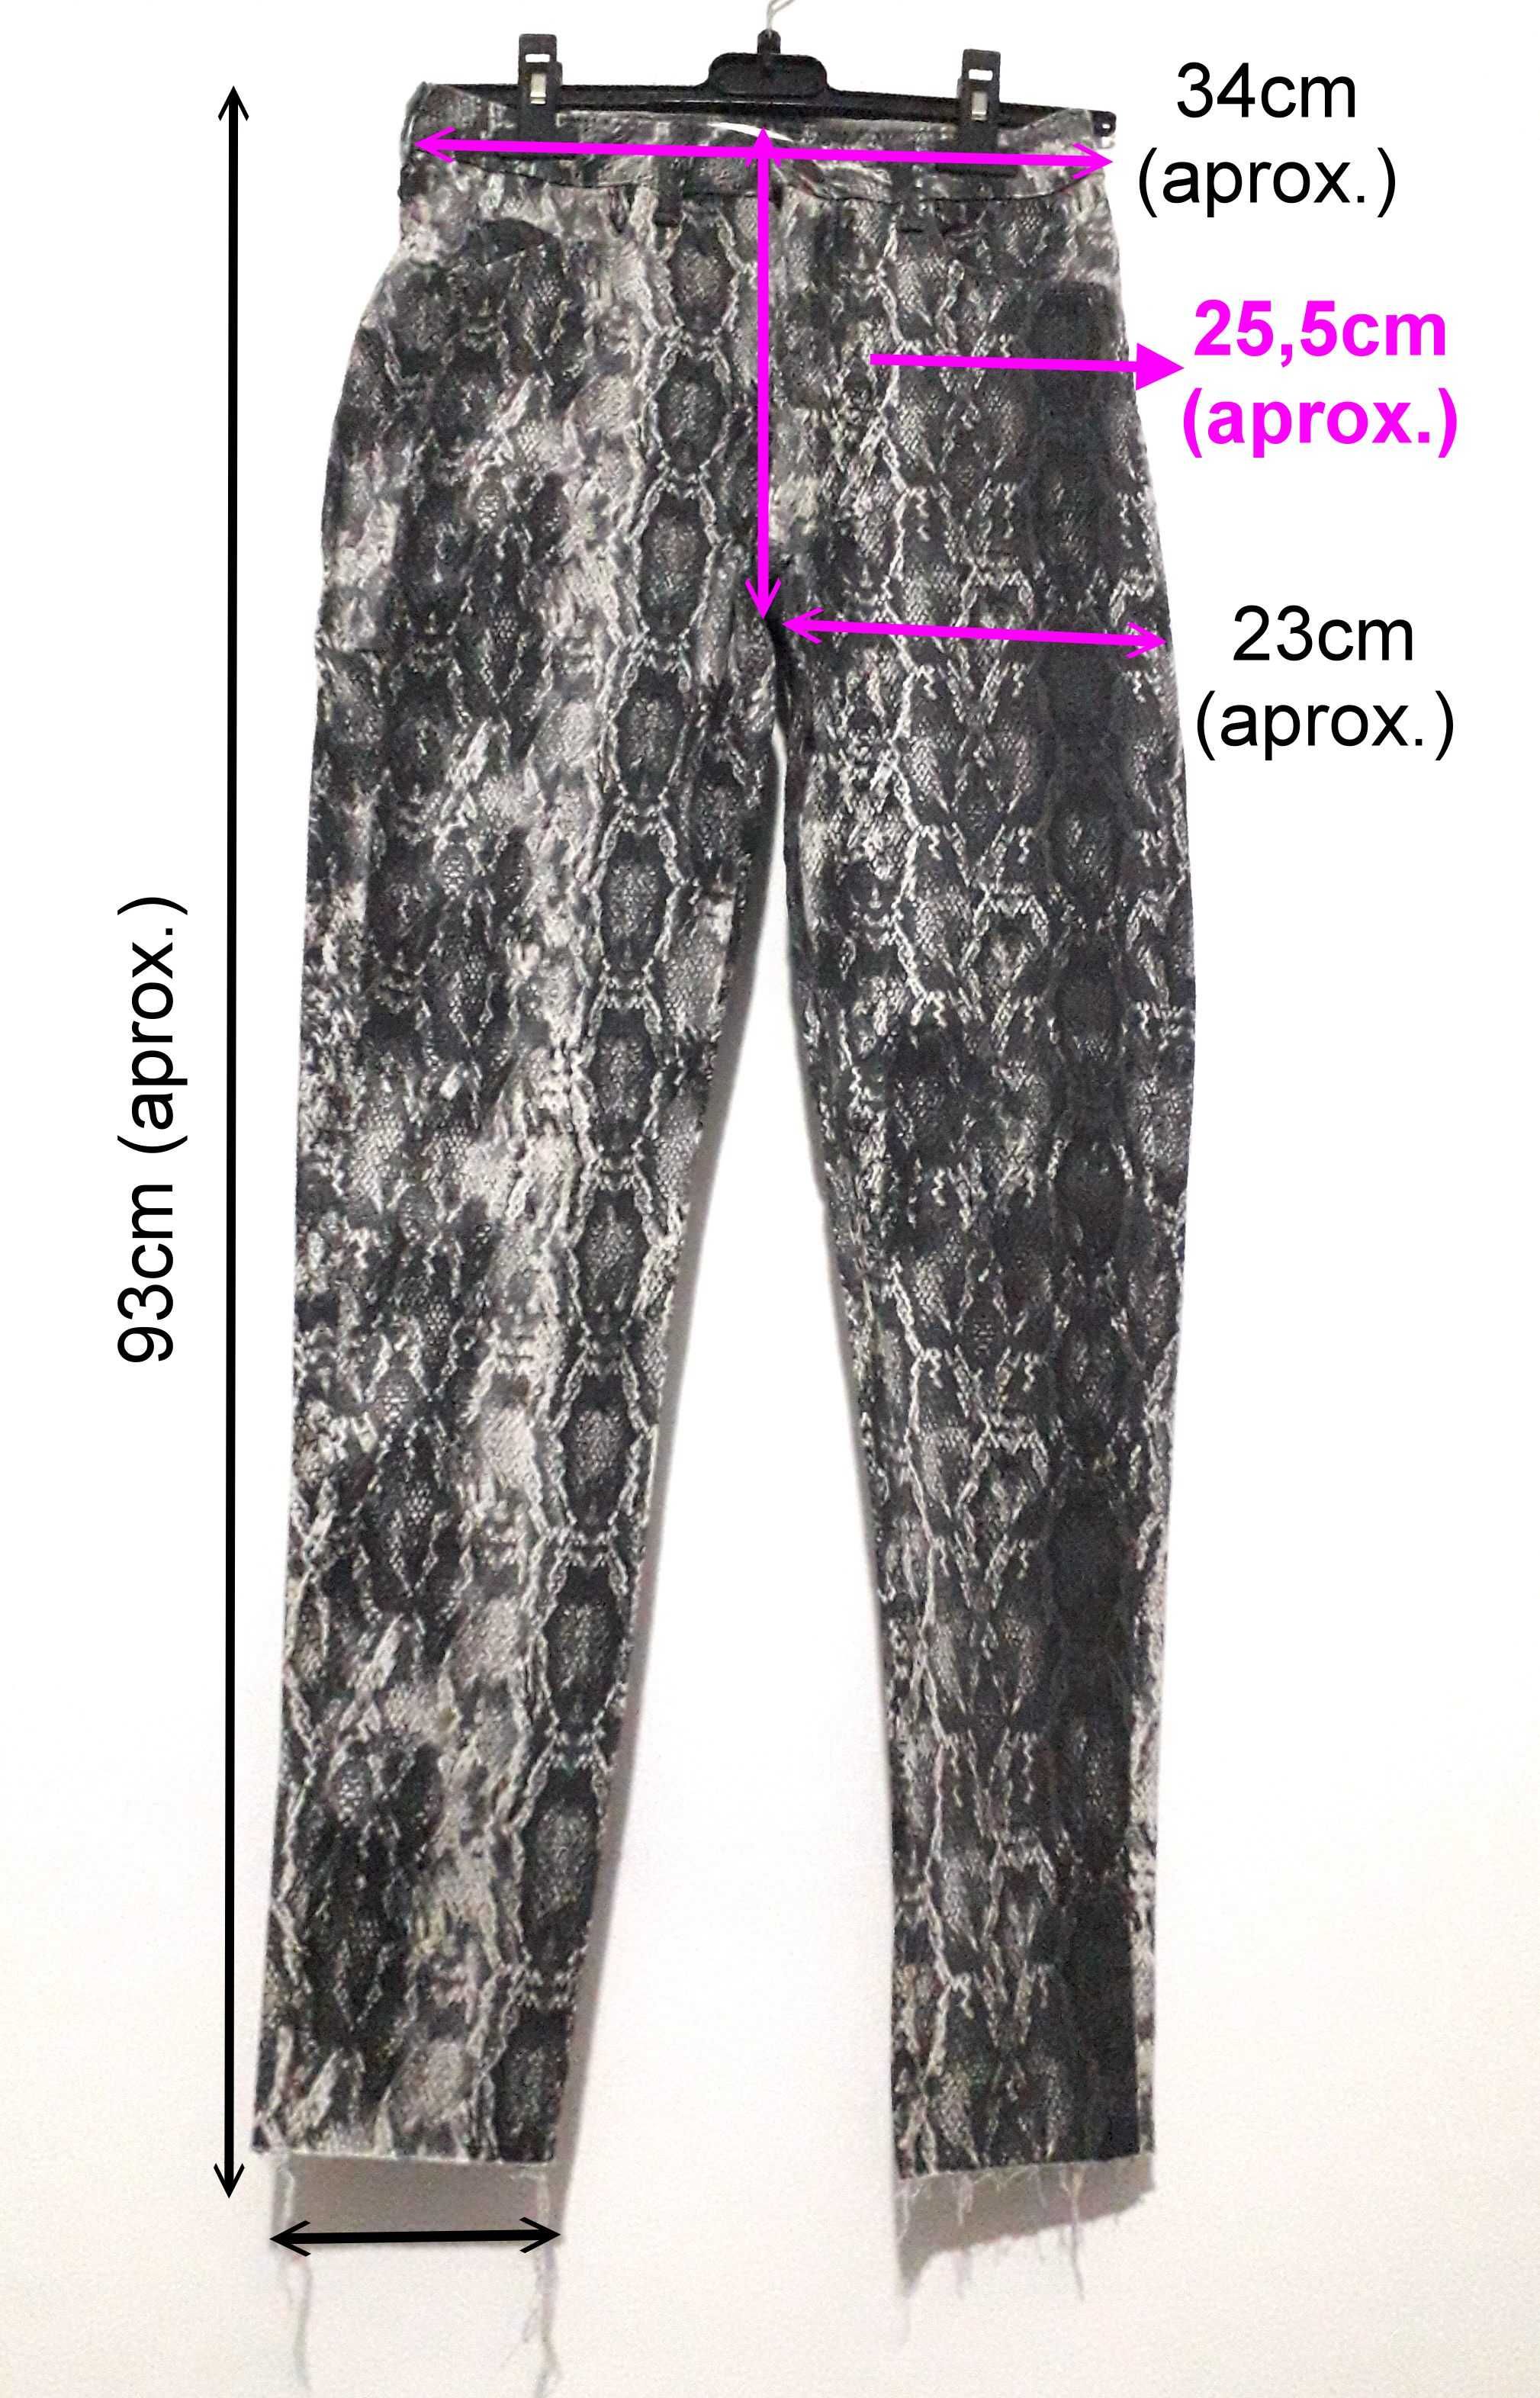 Calças/Jeans Z1975 padrão serpente da Zara T: 36 Novas